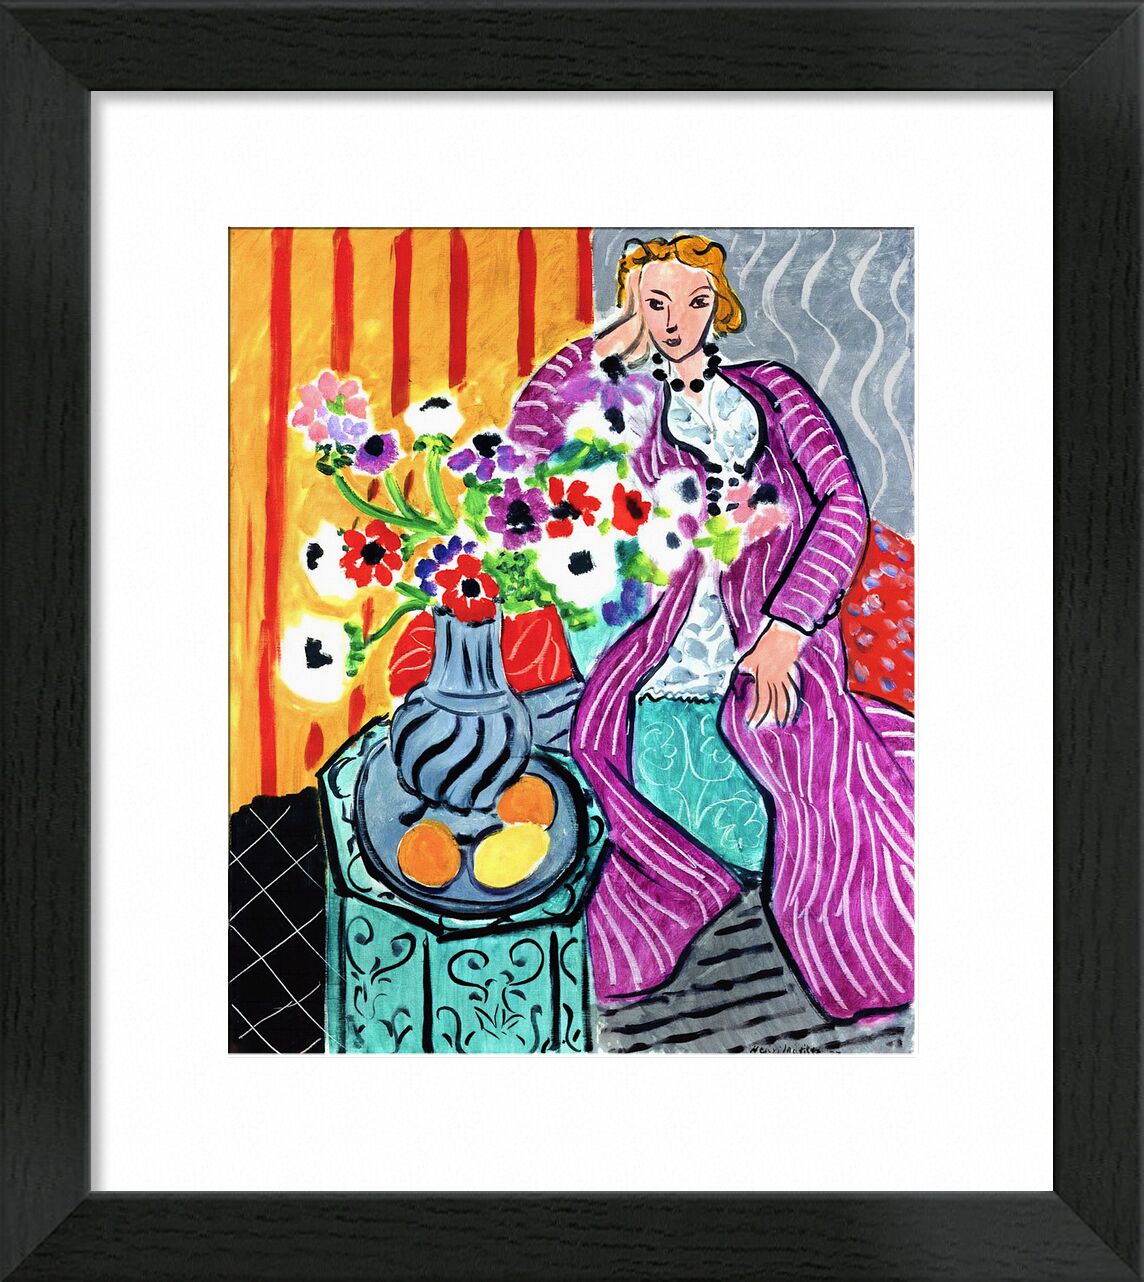 Violettes Gewand und Anemonen - Matisse von Bildende Kunst, Prodi Art, Anemonen, Kleid, Blumen, Zeichnung, Frau, Henri Matisse, Matisse